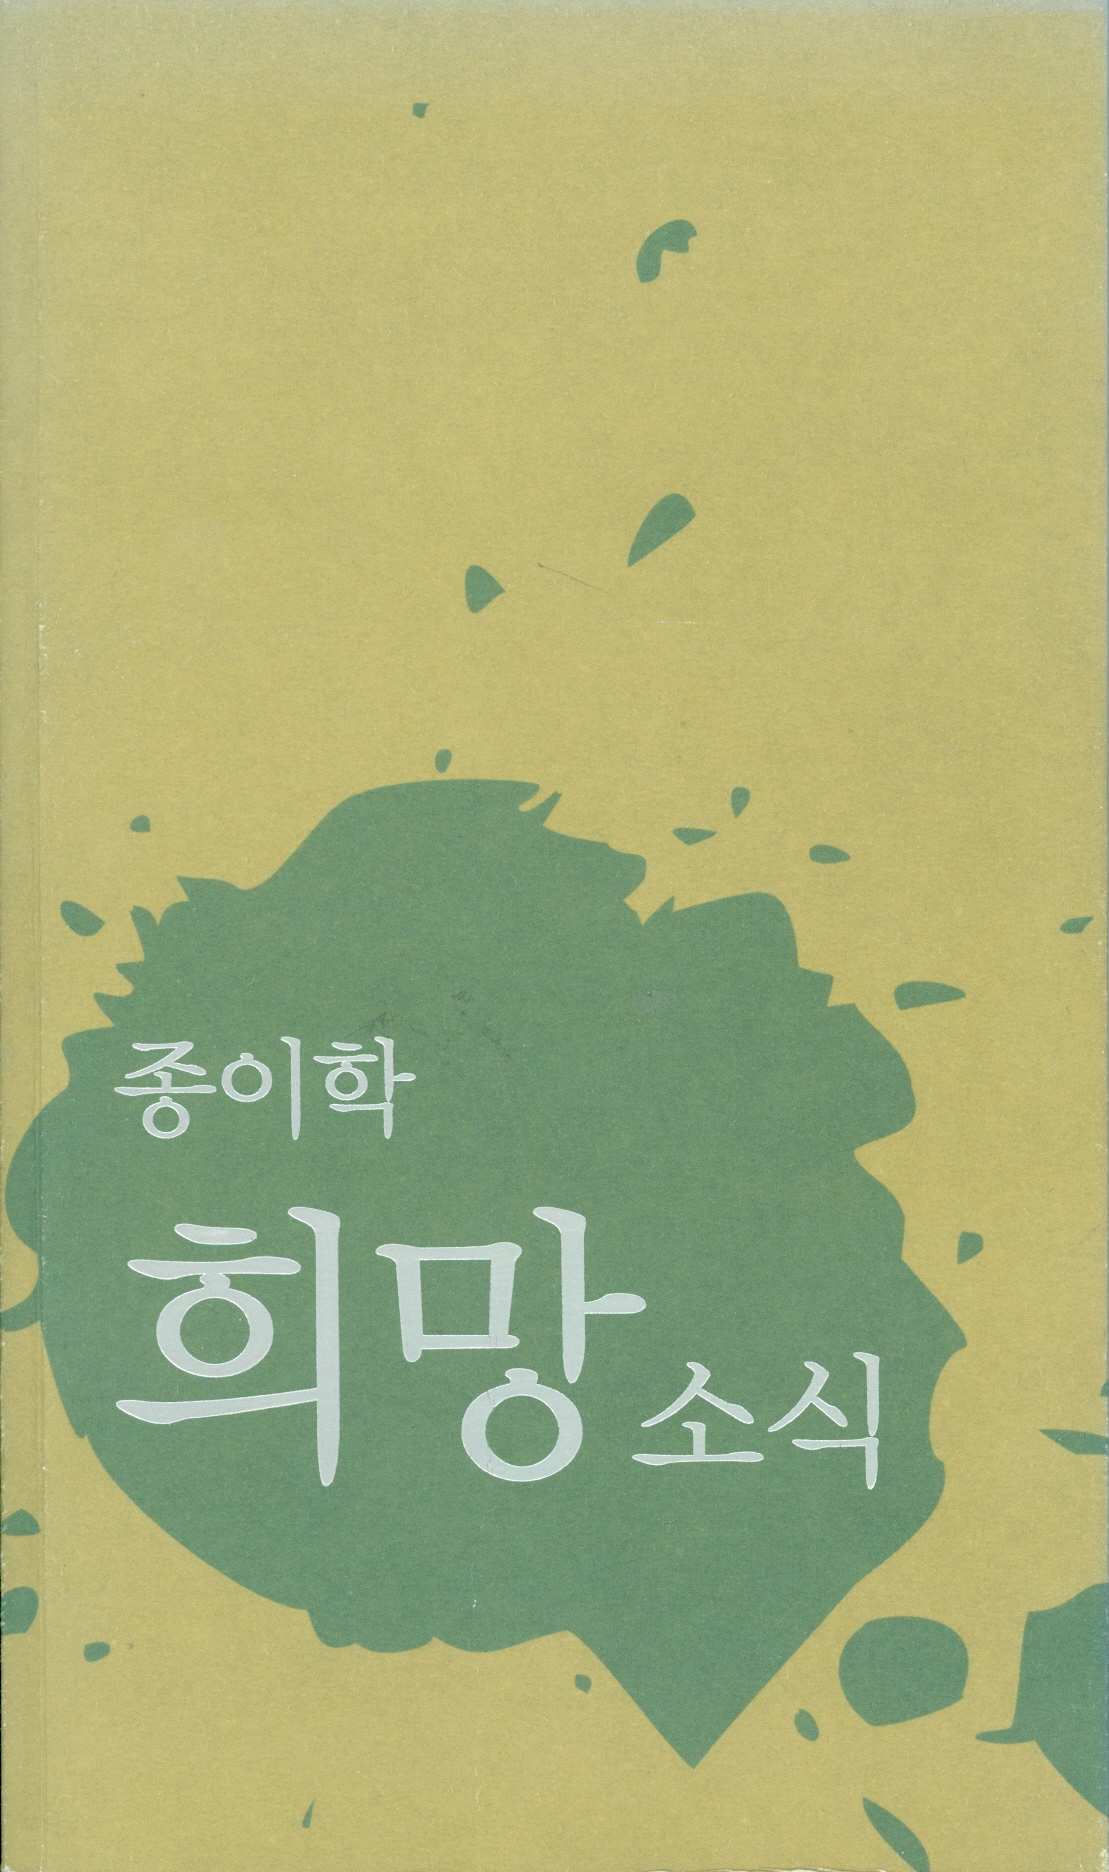 2006 Jong-I-Hak News for Hope